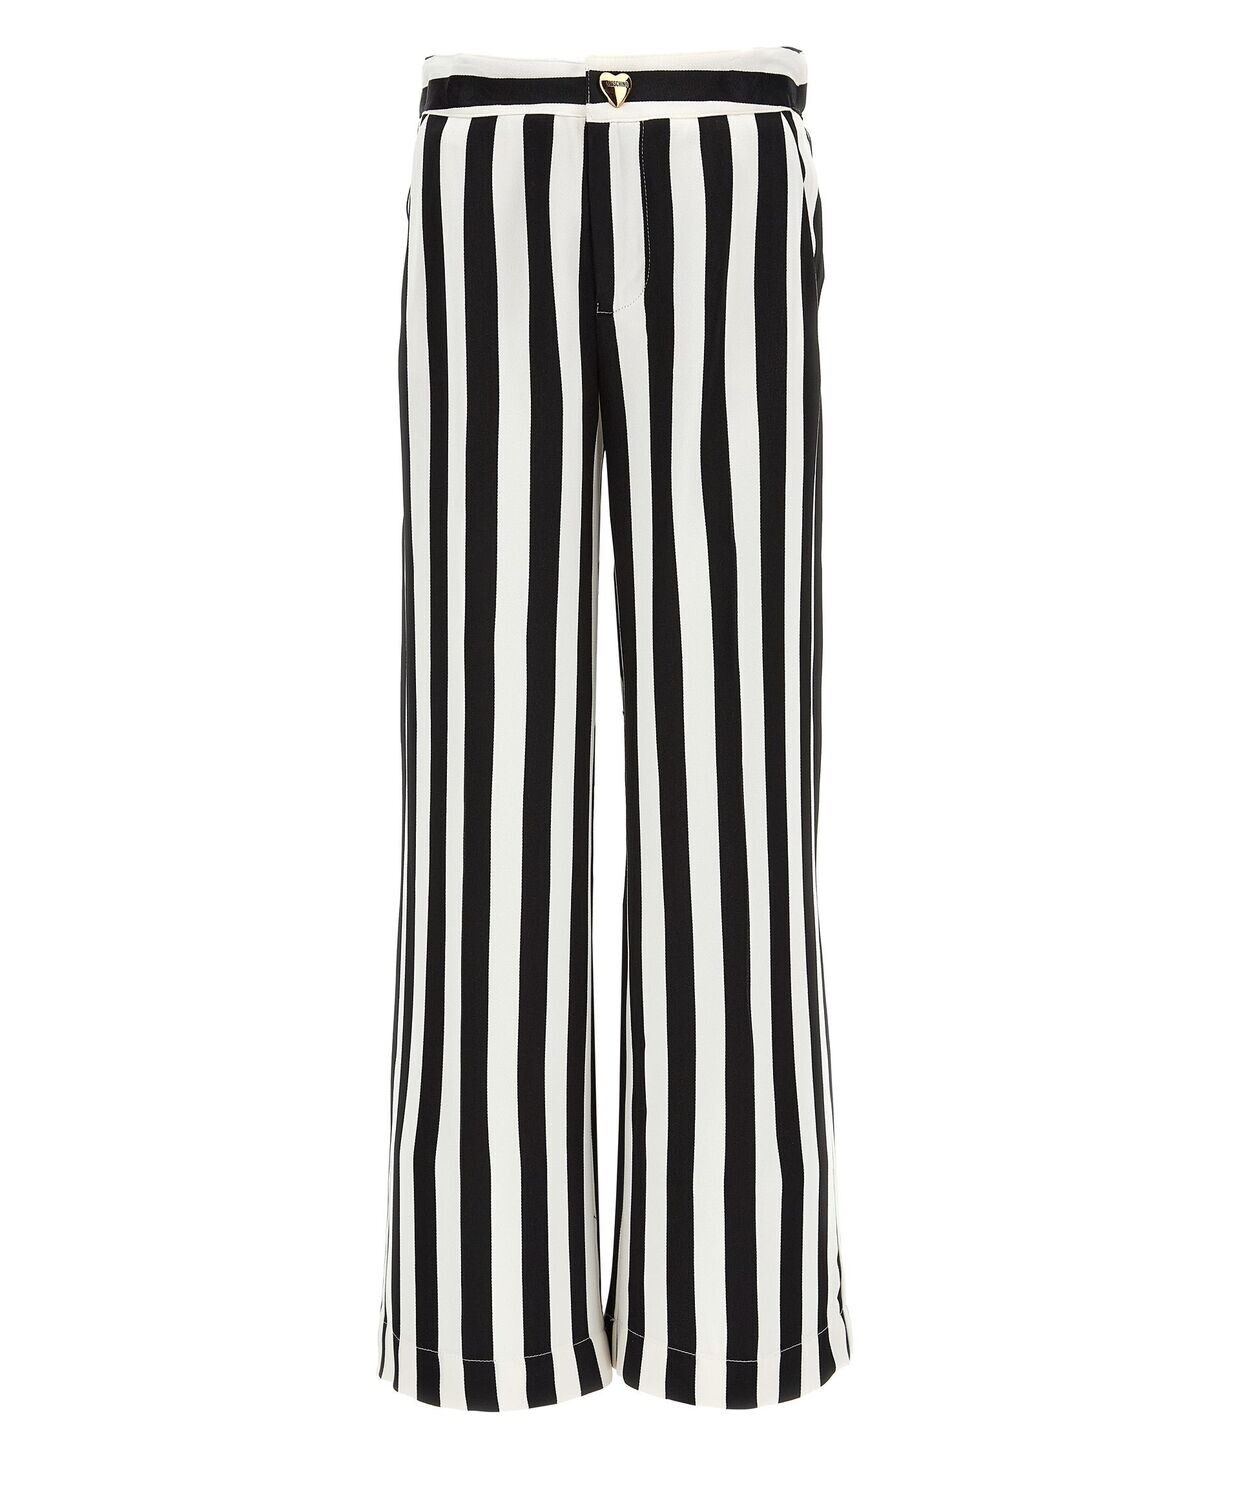 Moschino - Pantalone righe bianco e nero, Size: 12 anni